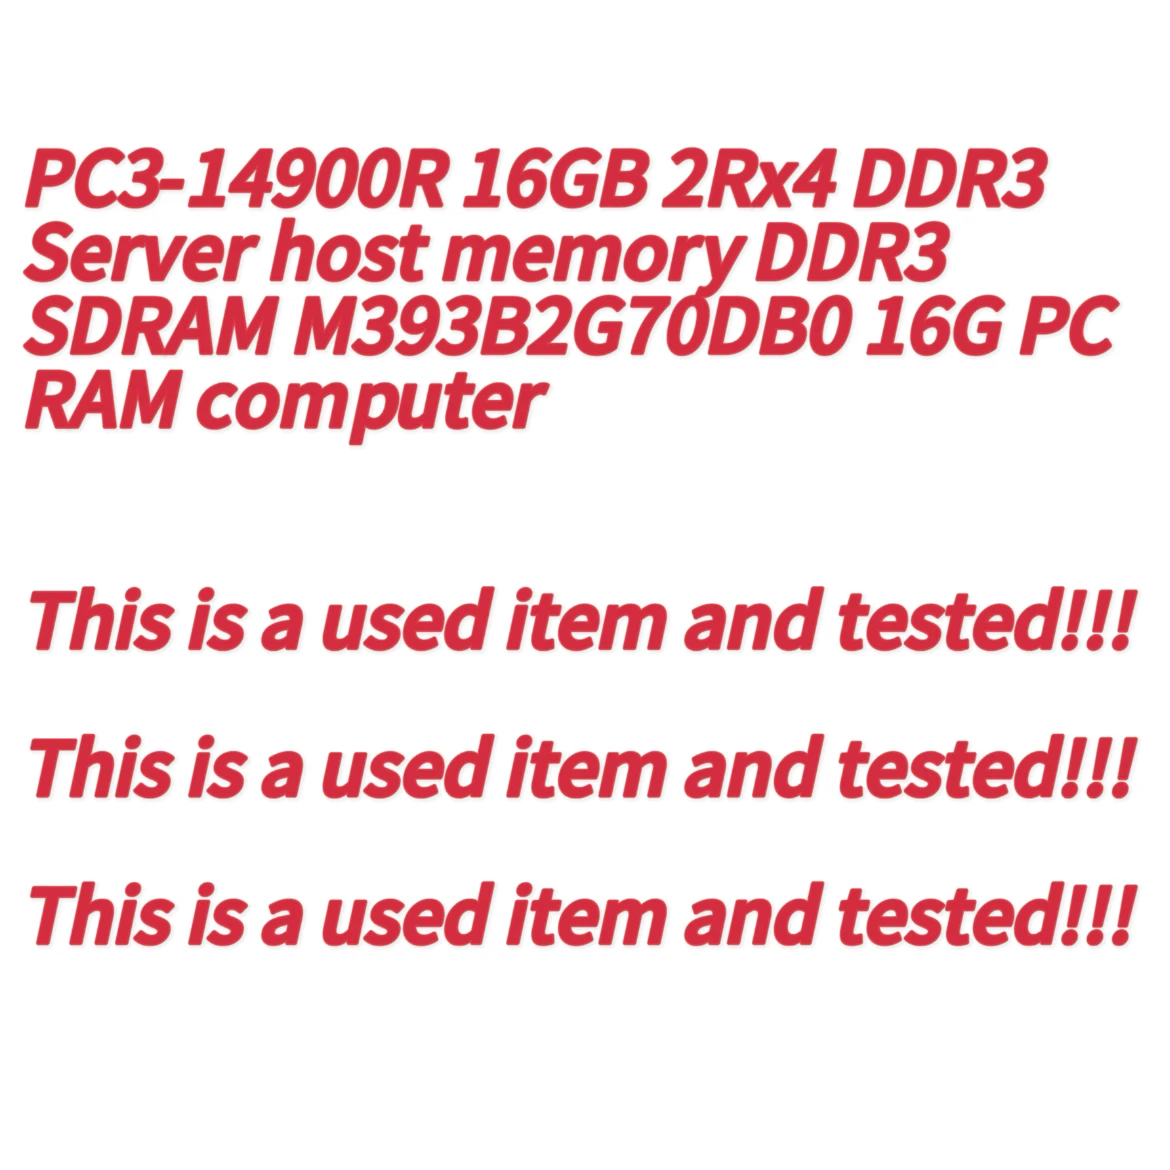 PC3-14900R 16GB 2Rx4 DDR3 Server Host Memory DDR3 SDRAM M393B2G70DB0 16GB PC RAM Computer